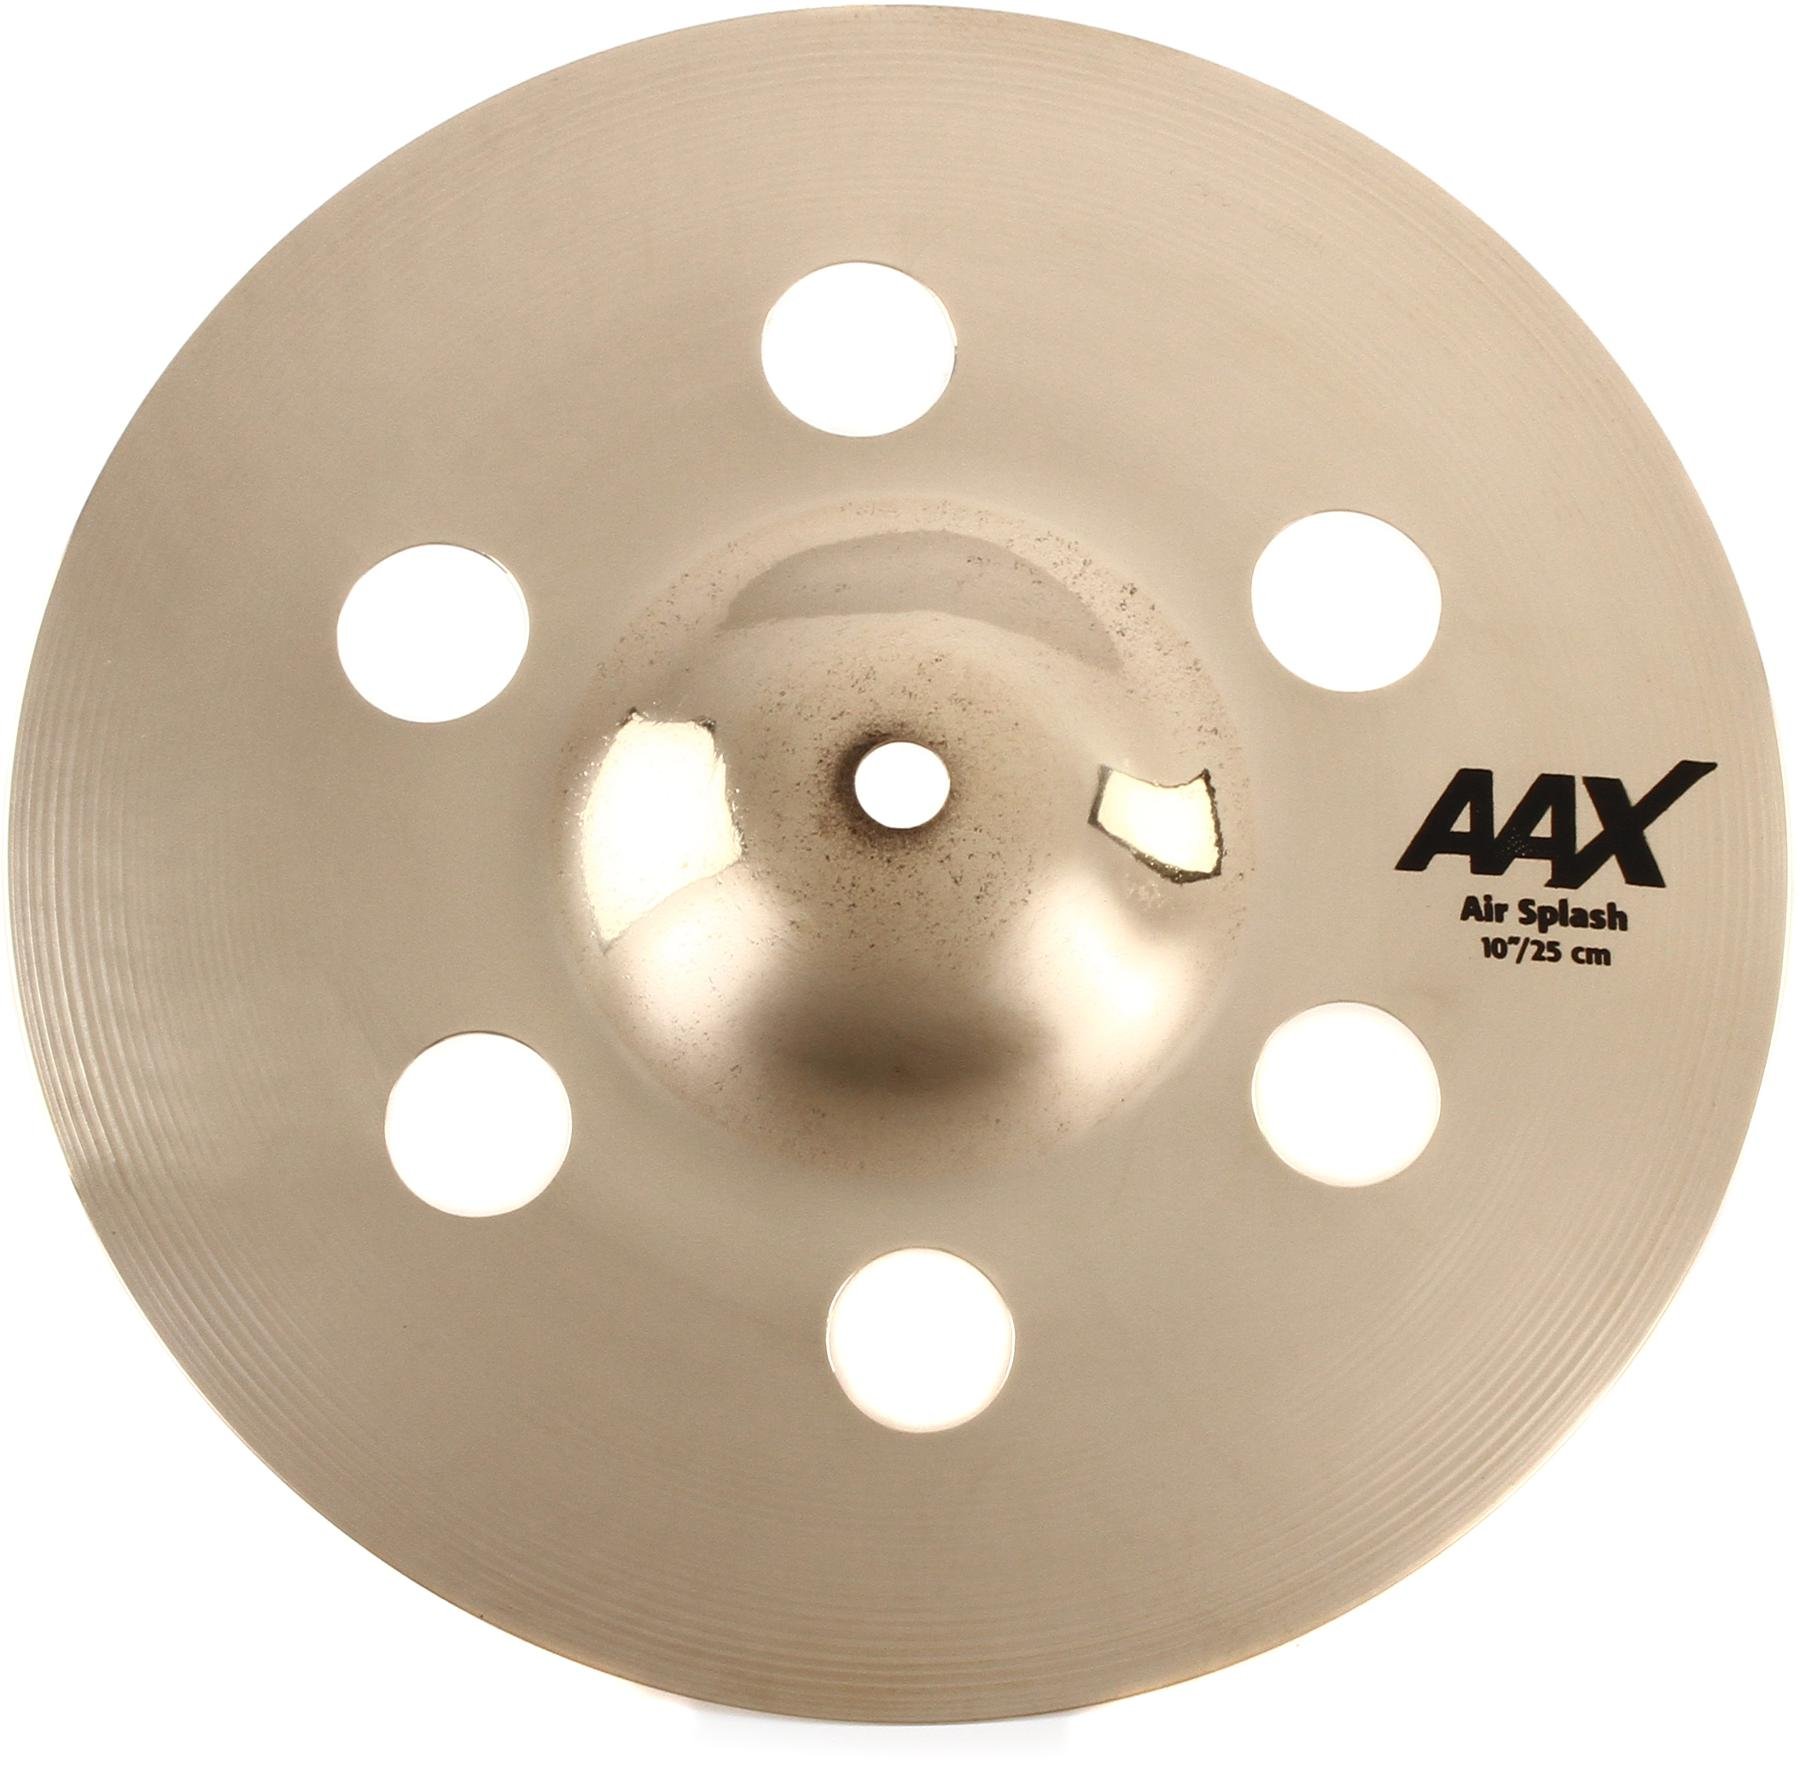 Sabian 10-Inch AAX Splash Cymbal